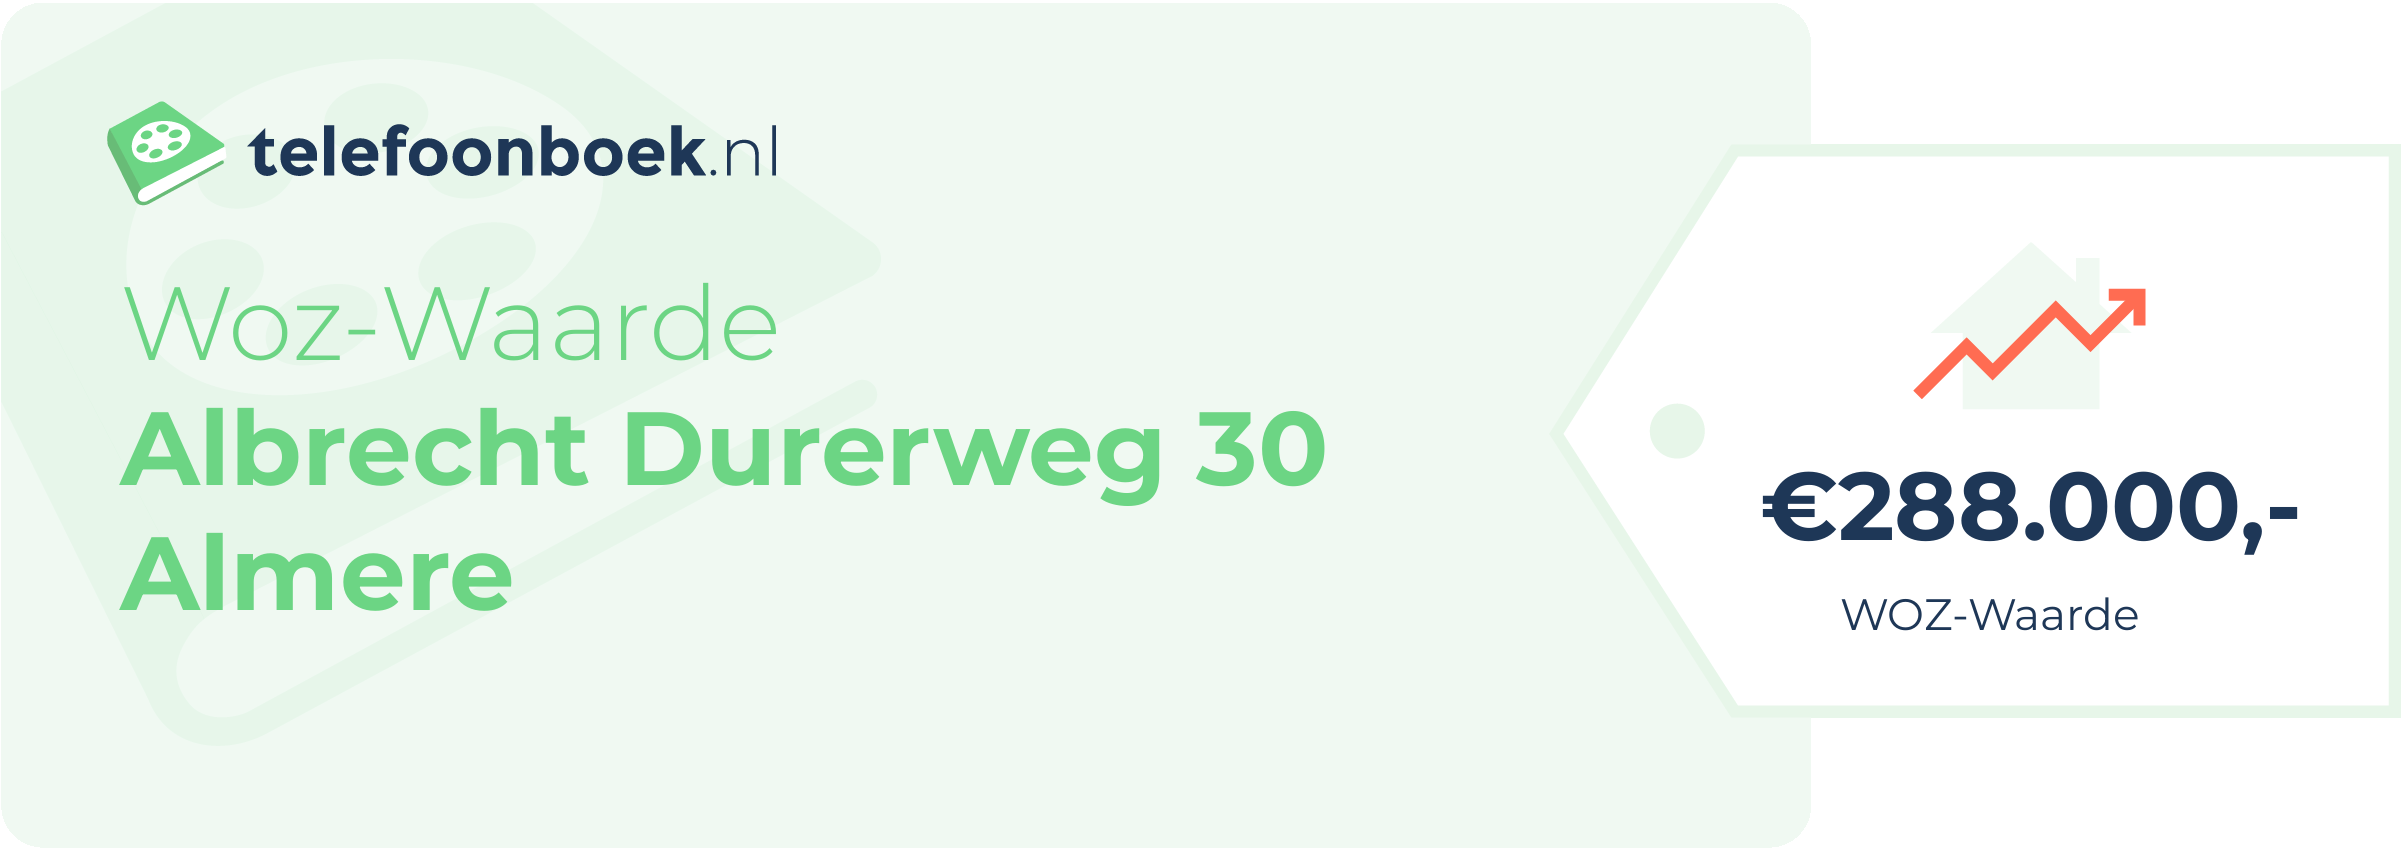 WOZ-waarde Albrecht Durerweg 30 Almere